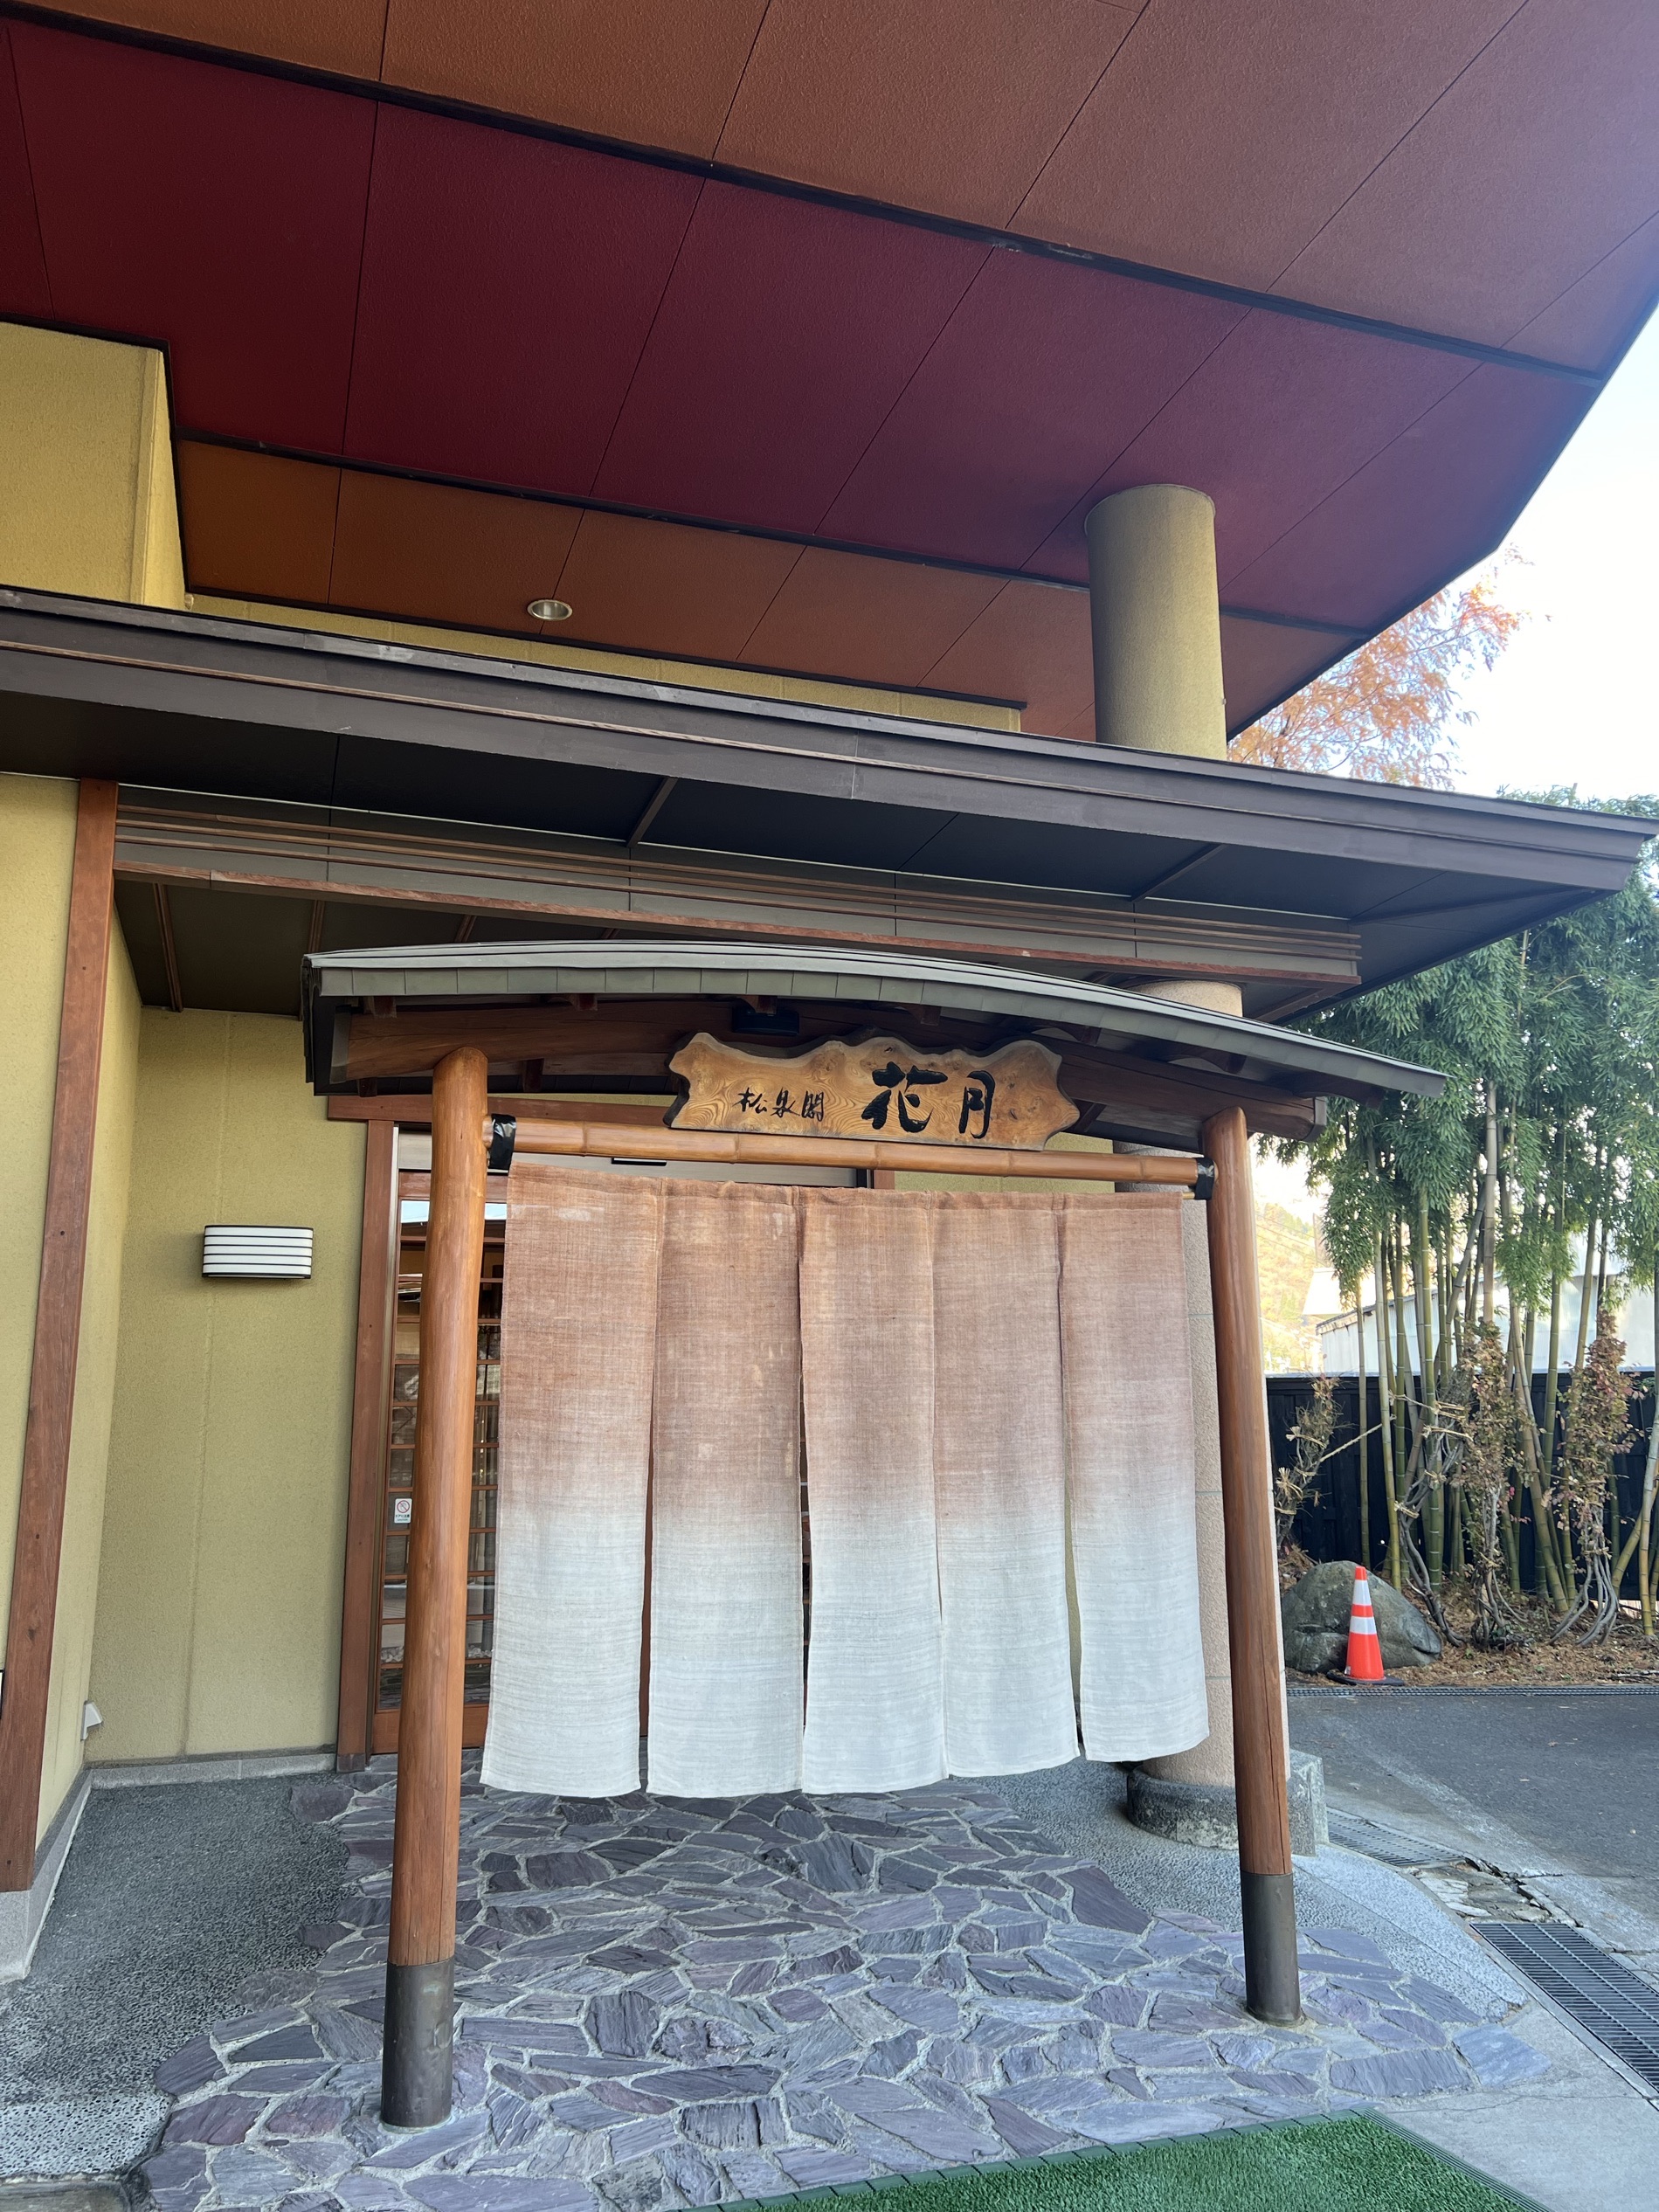 非常非常好的旅馆 门头虽不惊艳 设施和外观看着虽小 里面的布置和设置非常温馨 非常日式的服务 欢迎茶